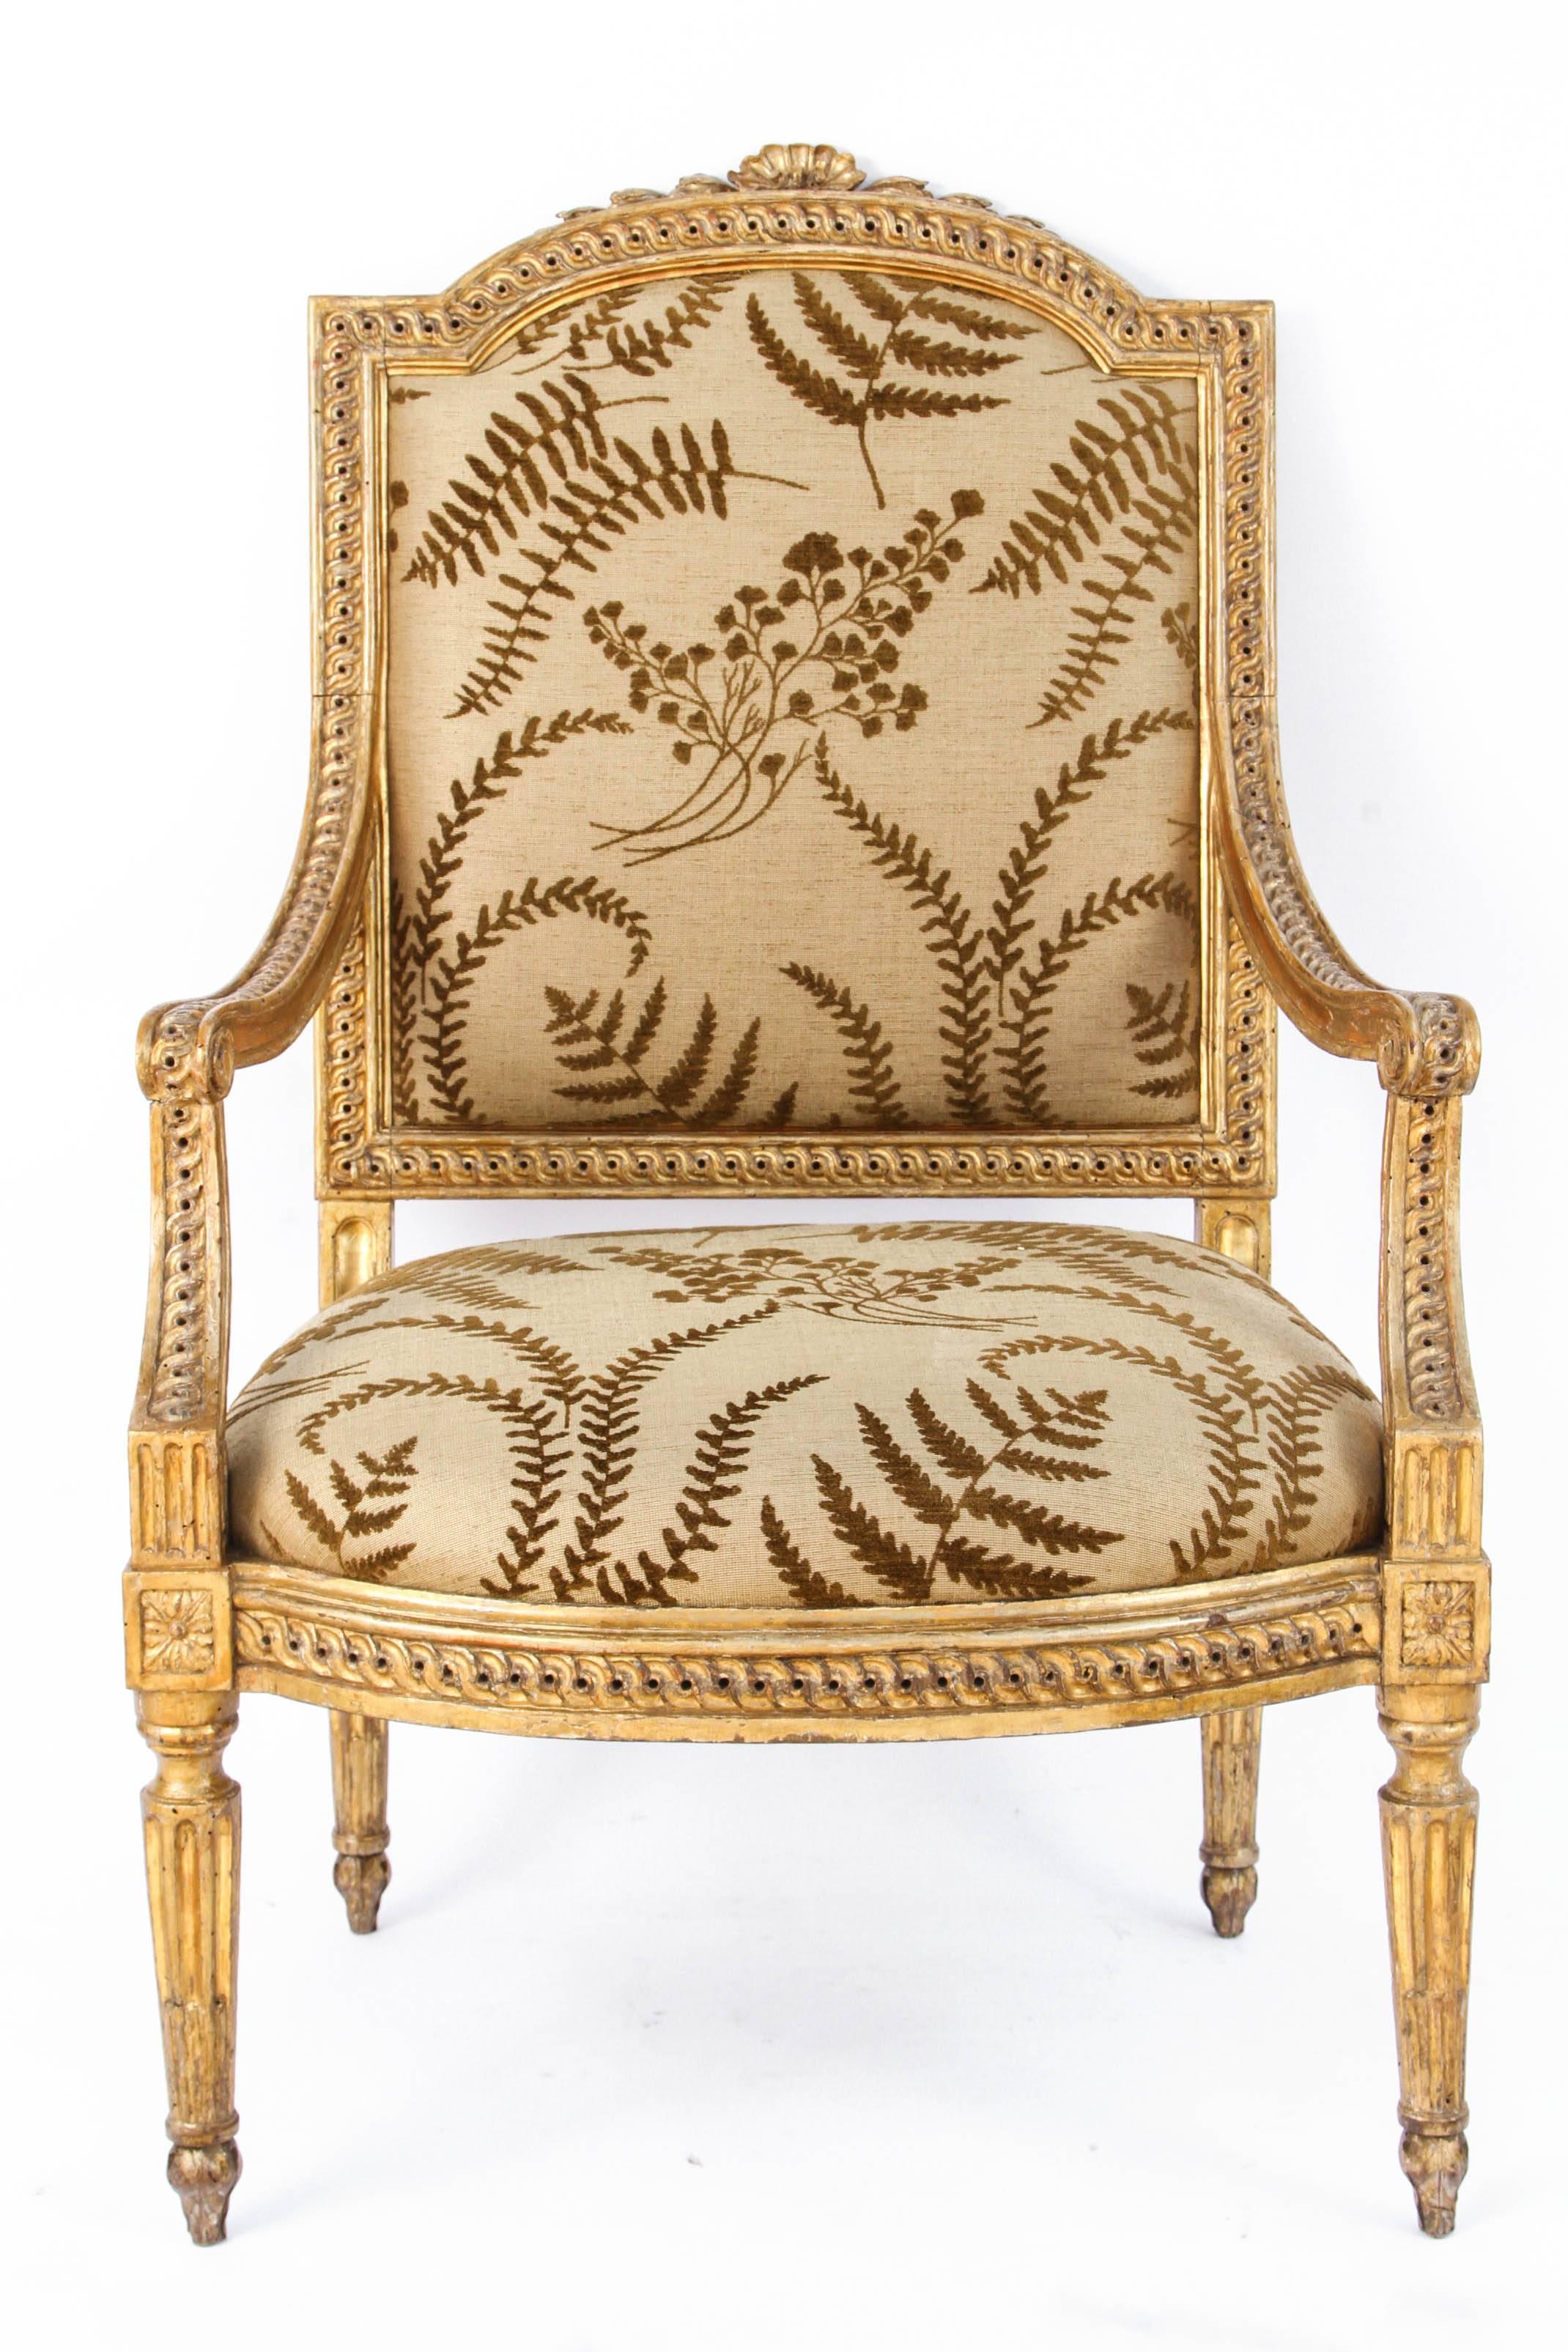 Paire de très beaux fauteuils italiens en bois doré sculpté du XVIIIe siècle avec motif de coquille. Les chaises sont recouvertes d'un tissu en lin tissé à thème botanique. Le prix indiqué est pour une paire mais il y a une autre paire disponible à